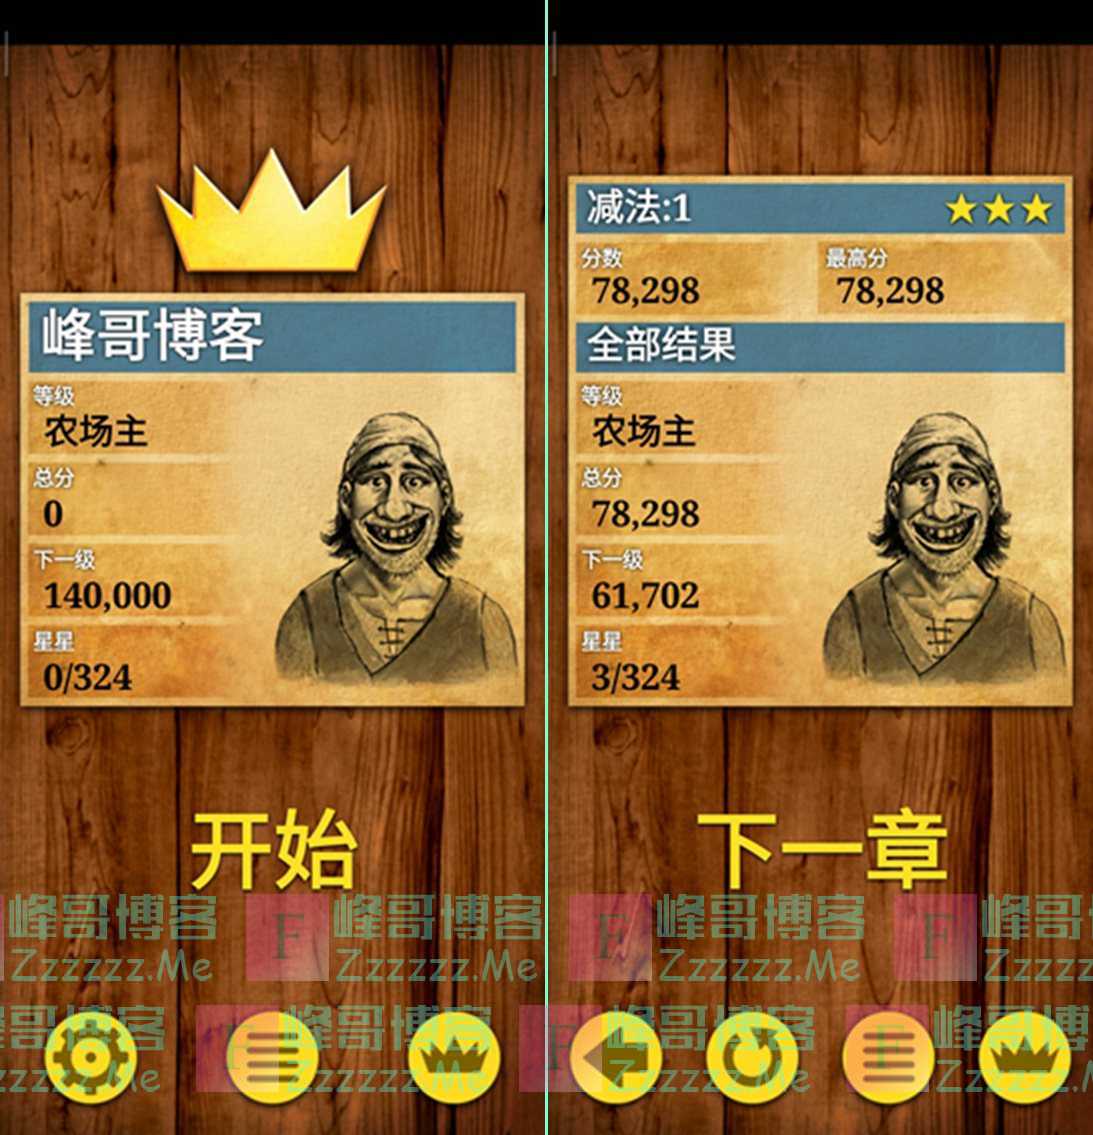 安卓数学之王 King of Math V1.0.16 中文汉化版 安卓数学练习游戏应用